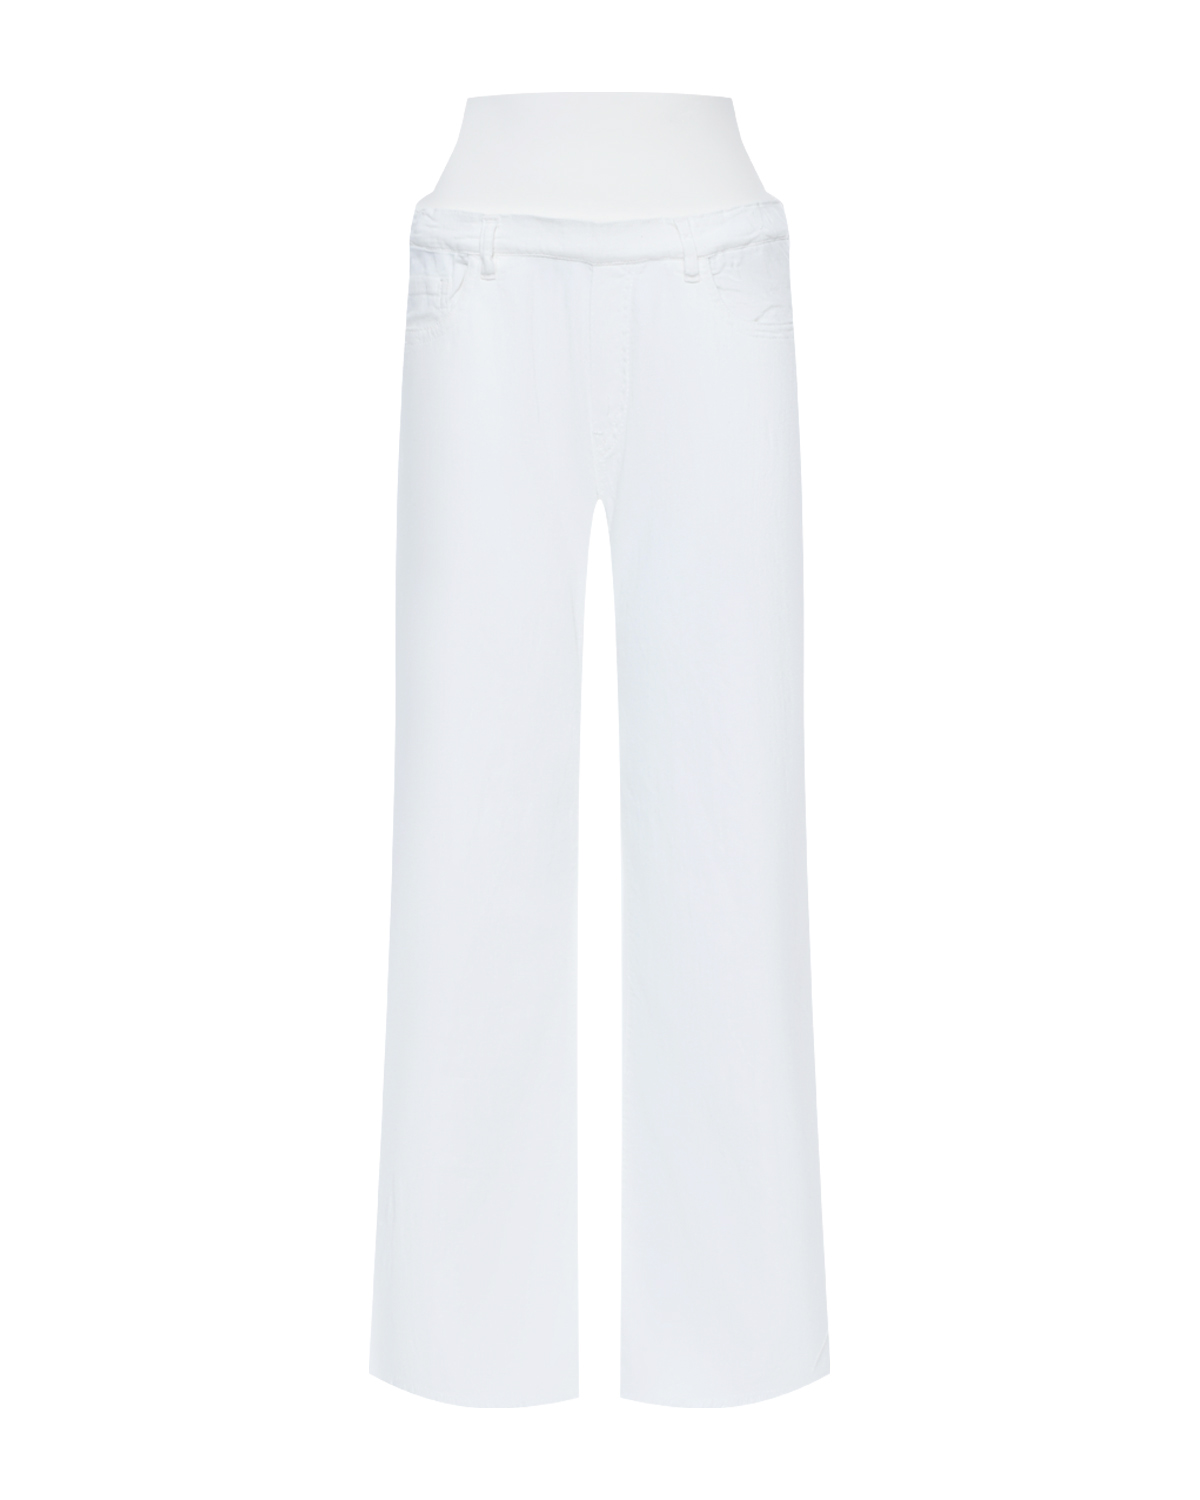 Джинсы для беременных широкие прямые, белые Pietro Brunelli белые джинсы капри для беременных pietro brunelli